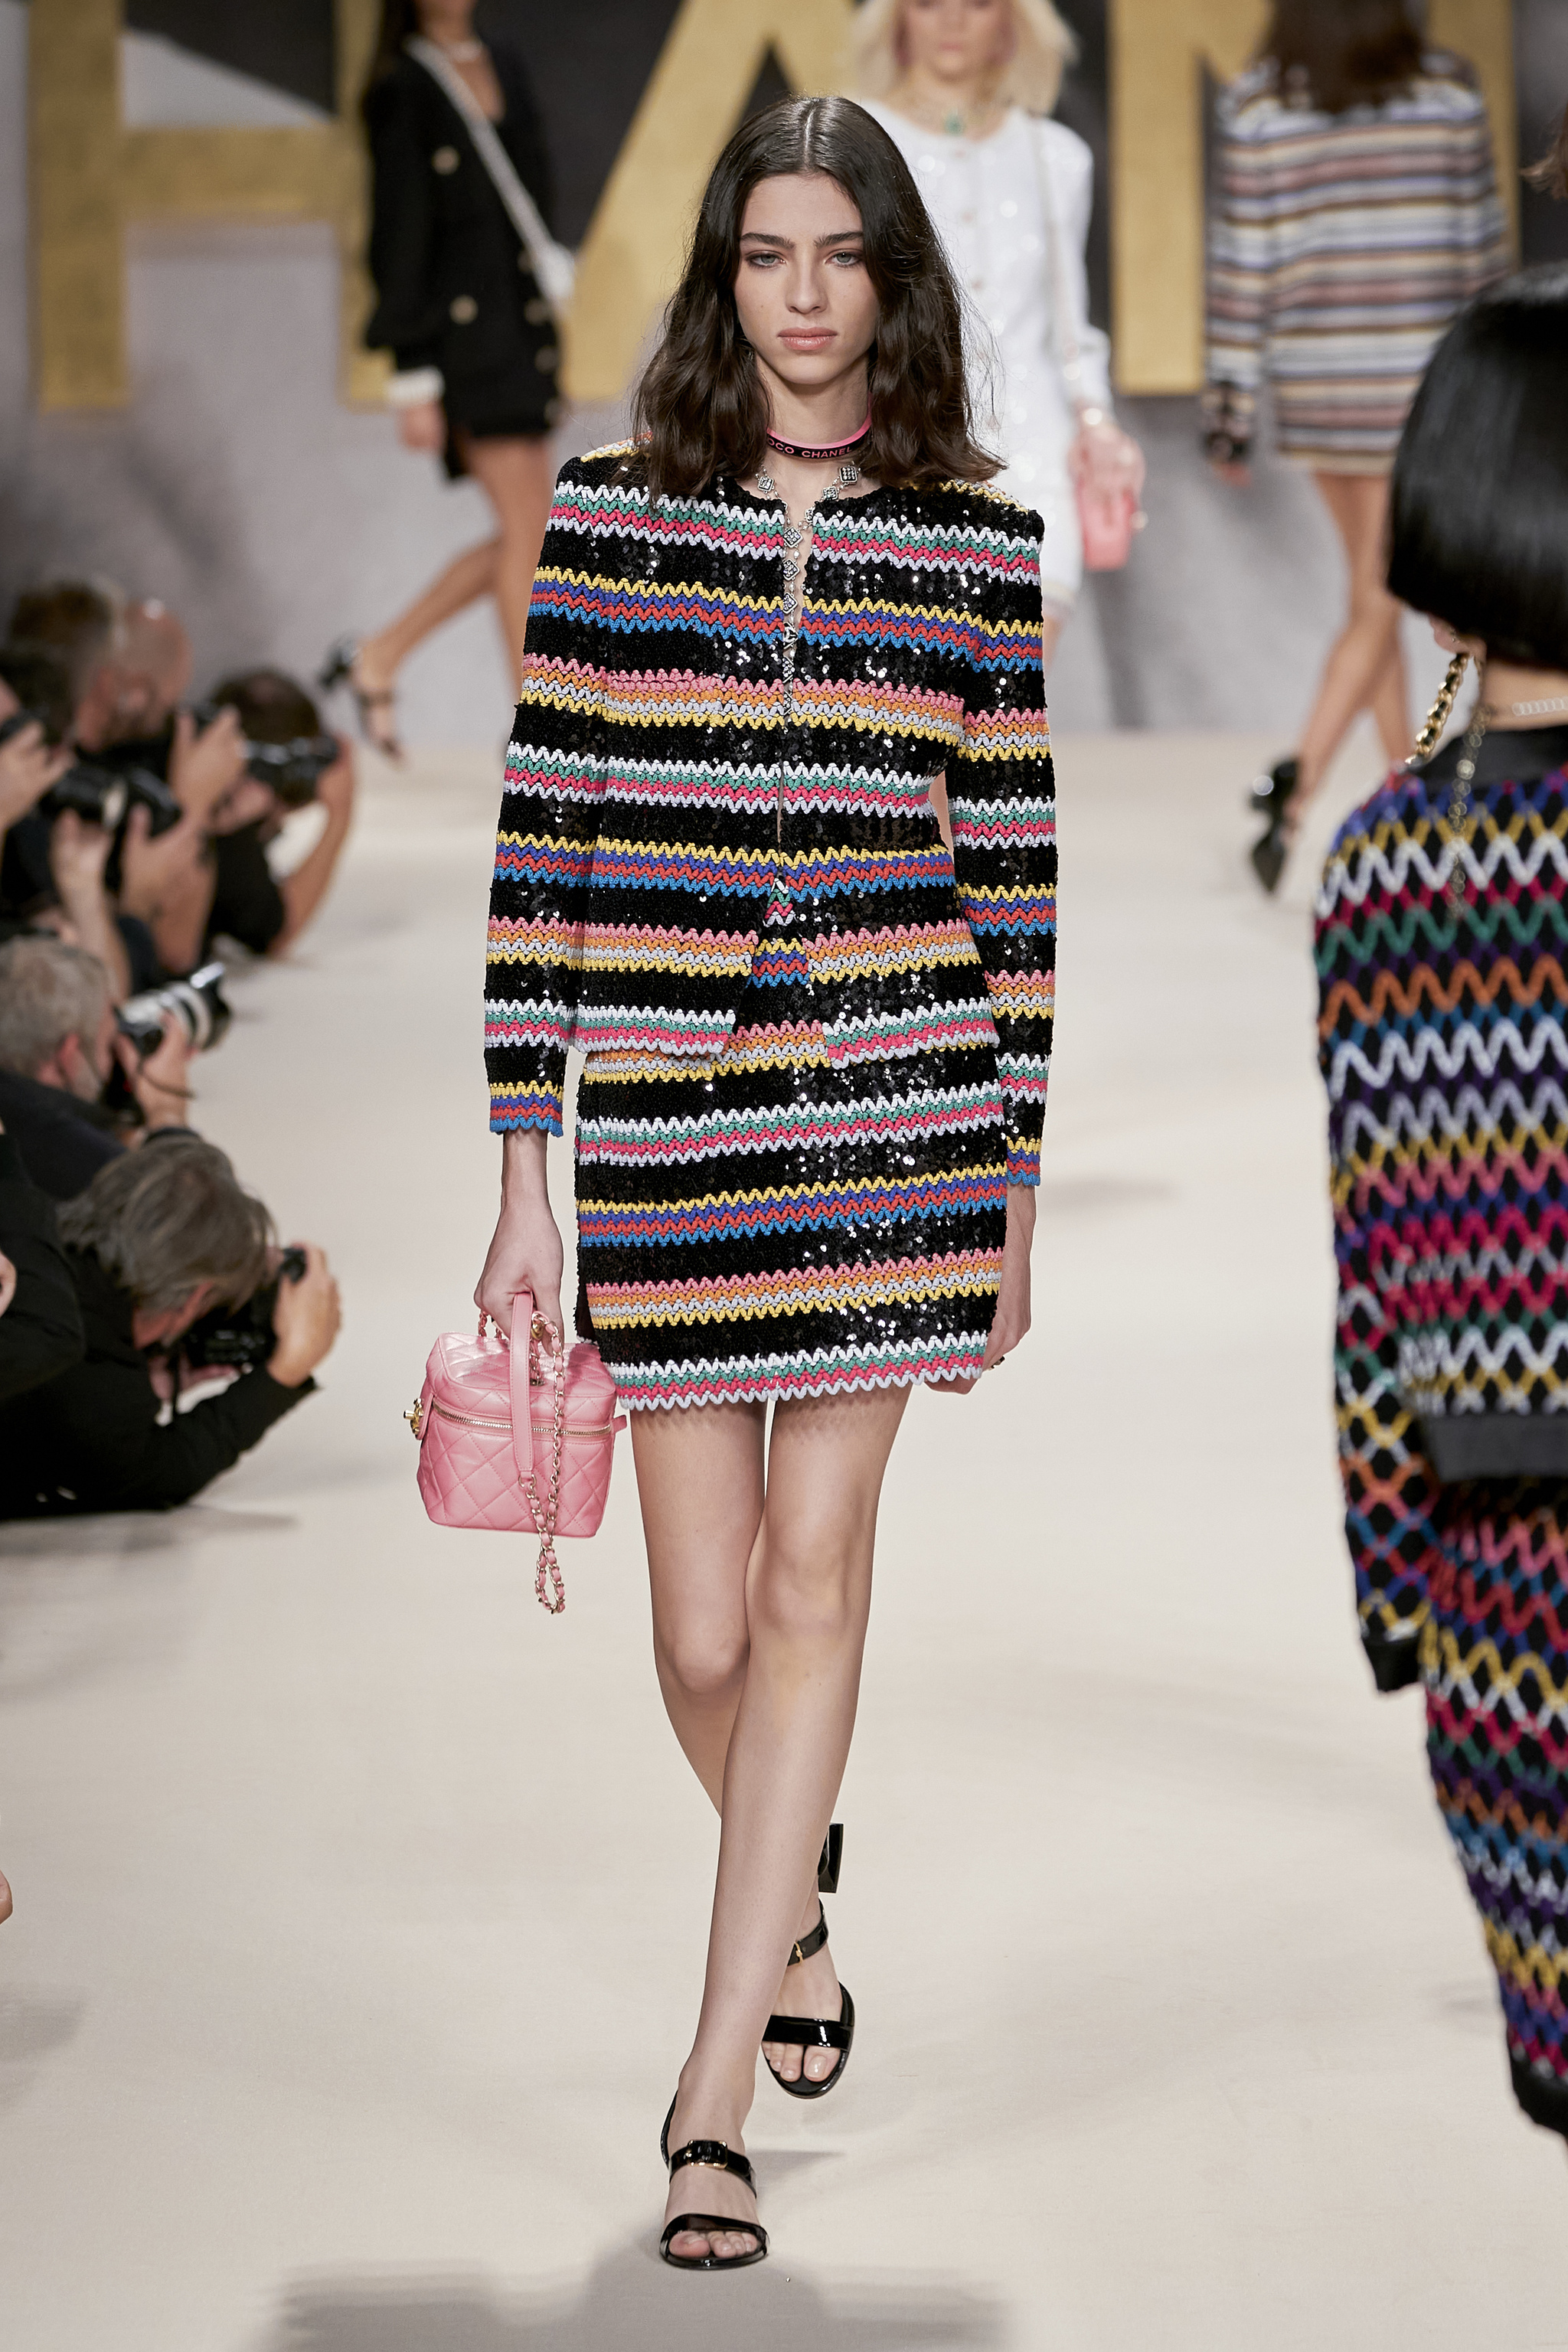 Chanel siempre versiona el mítico conjunto de traje y chaqueta, esta vez con una minifalda.